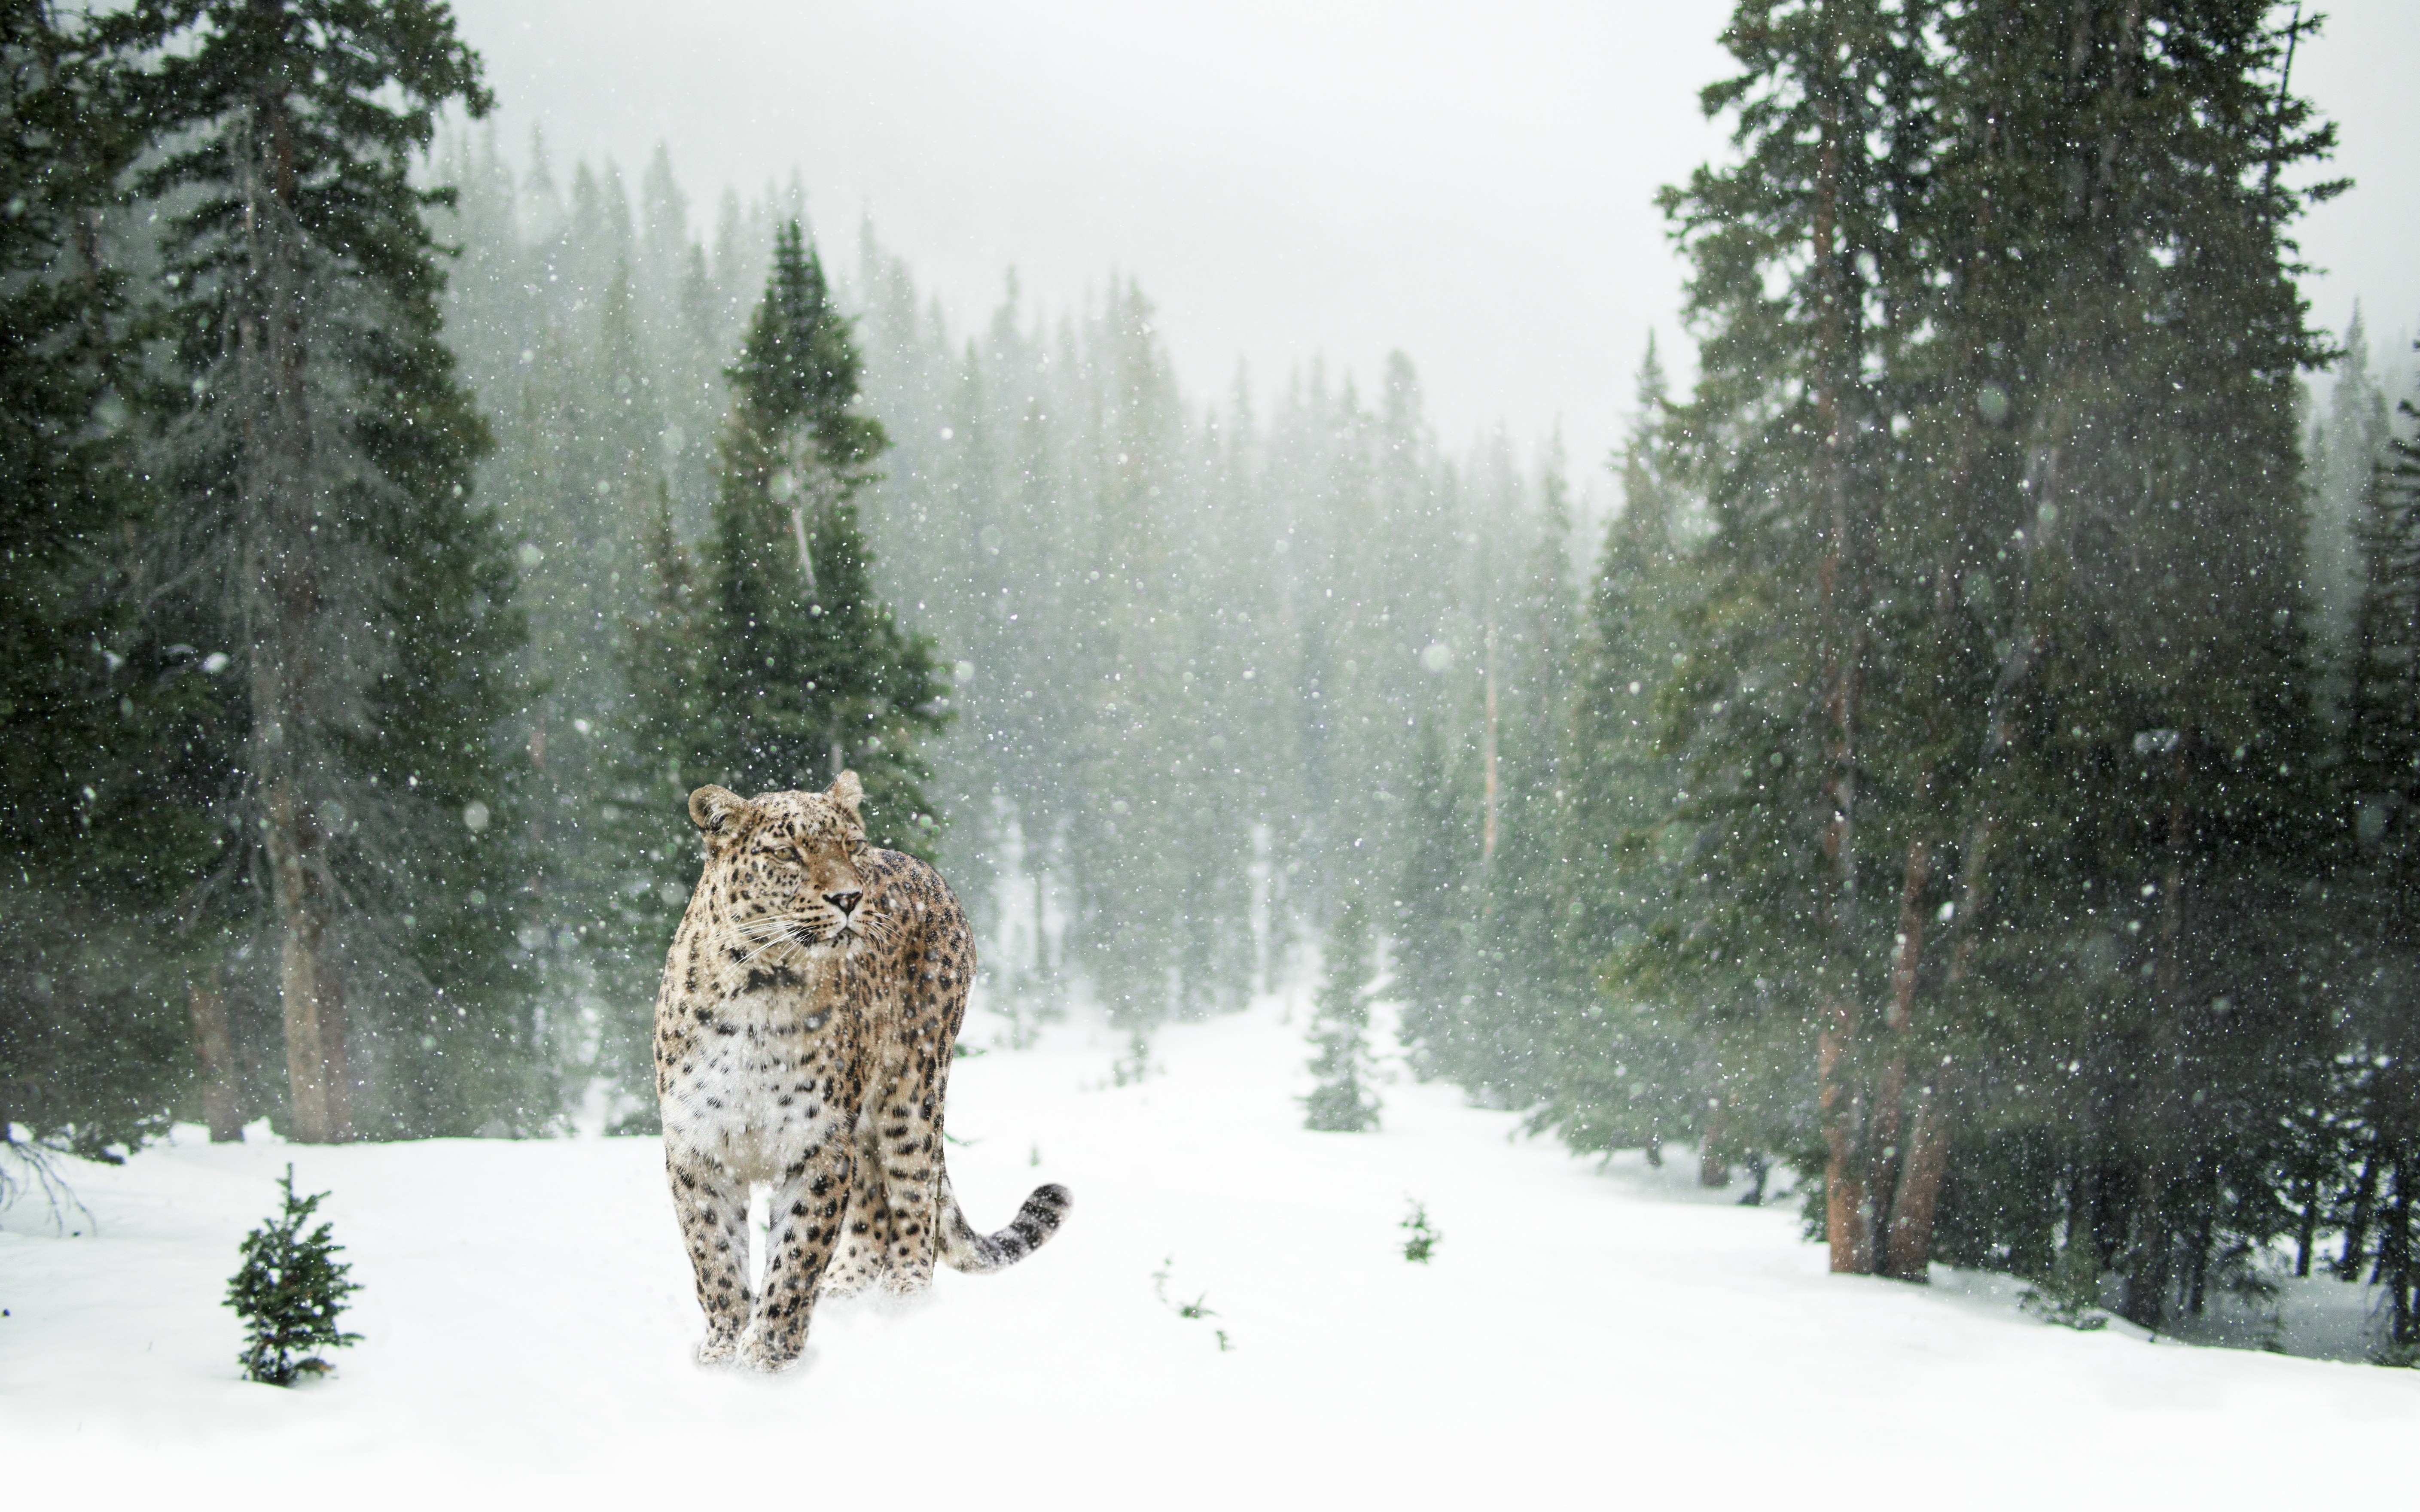 General 5634x3521 animals mammals feline forest pine trees snow leopard